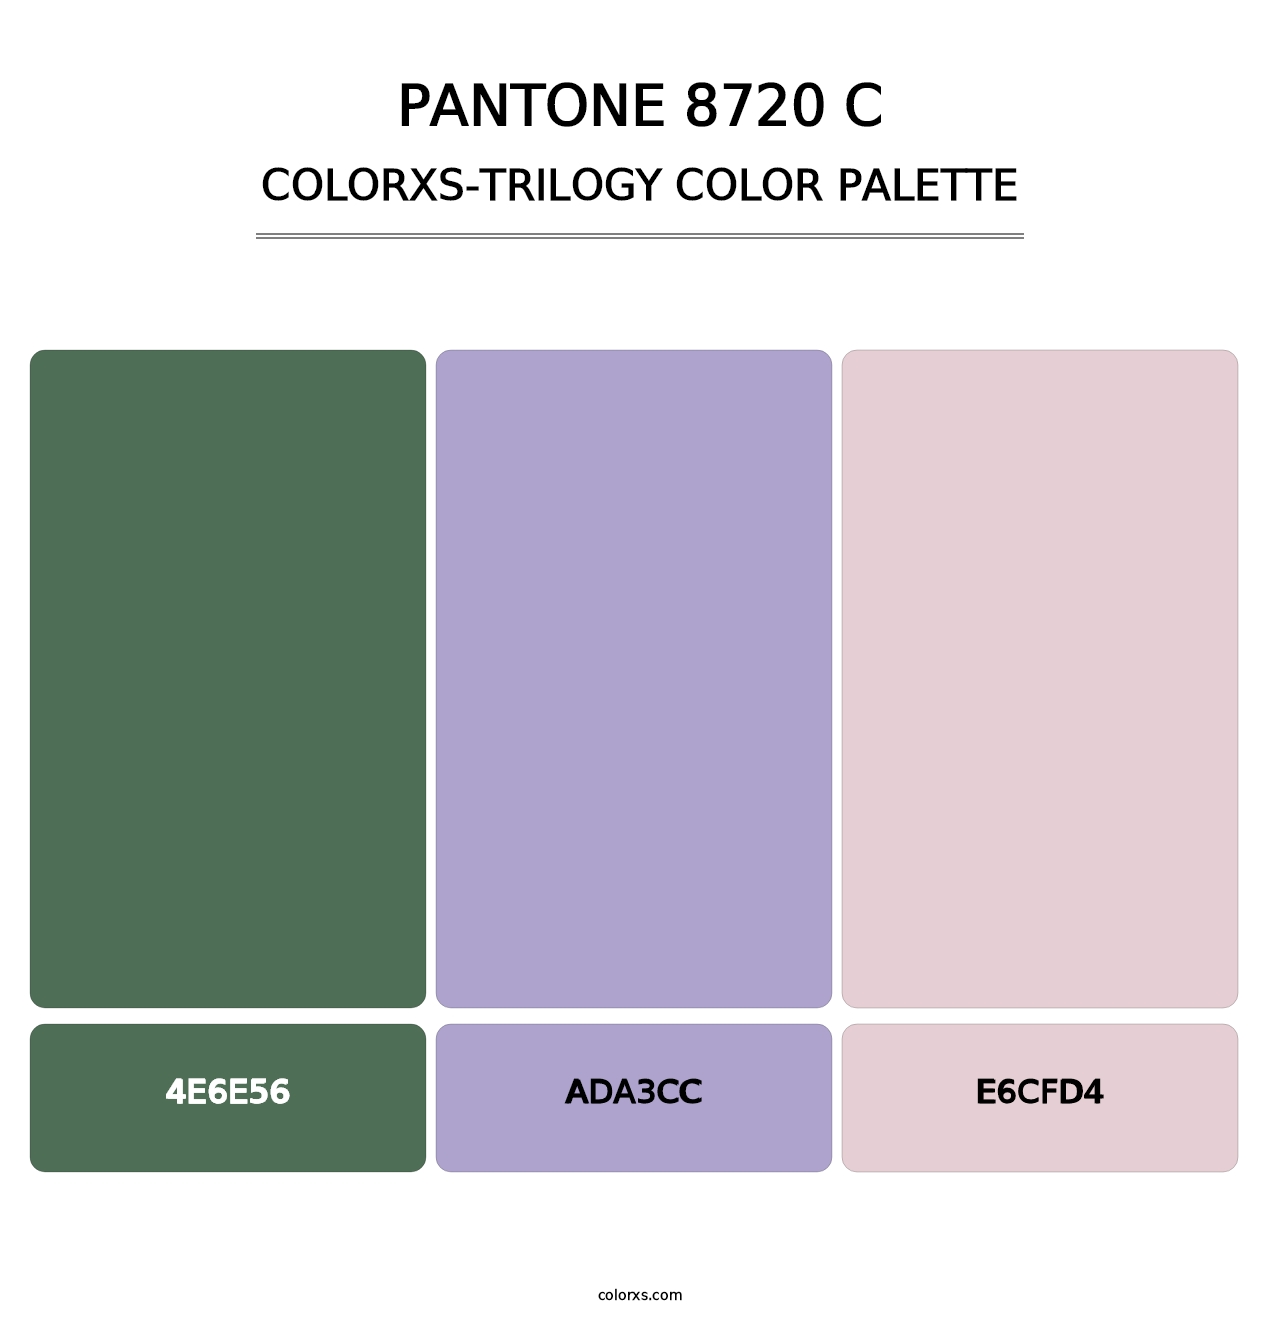 PANTONE 8720 C - Colorxs Trilogy Palette